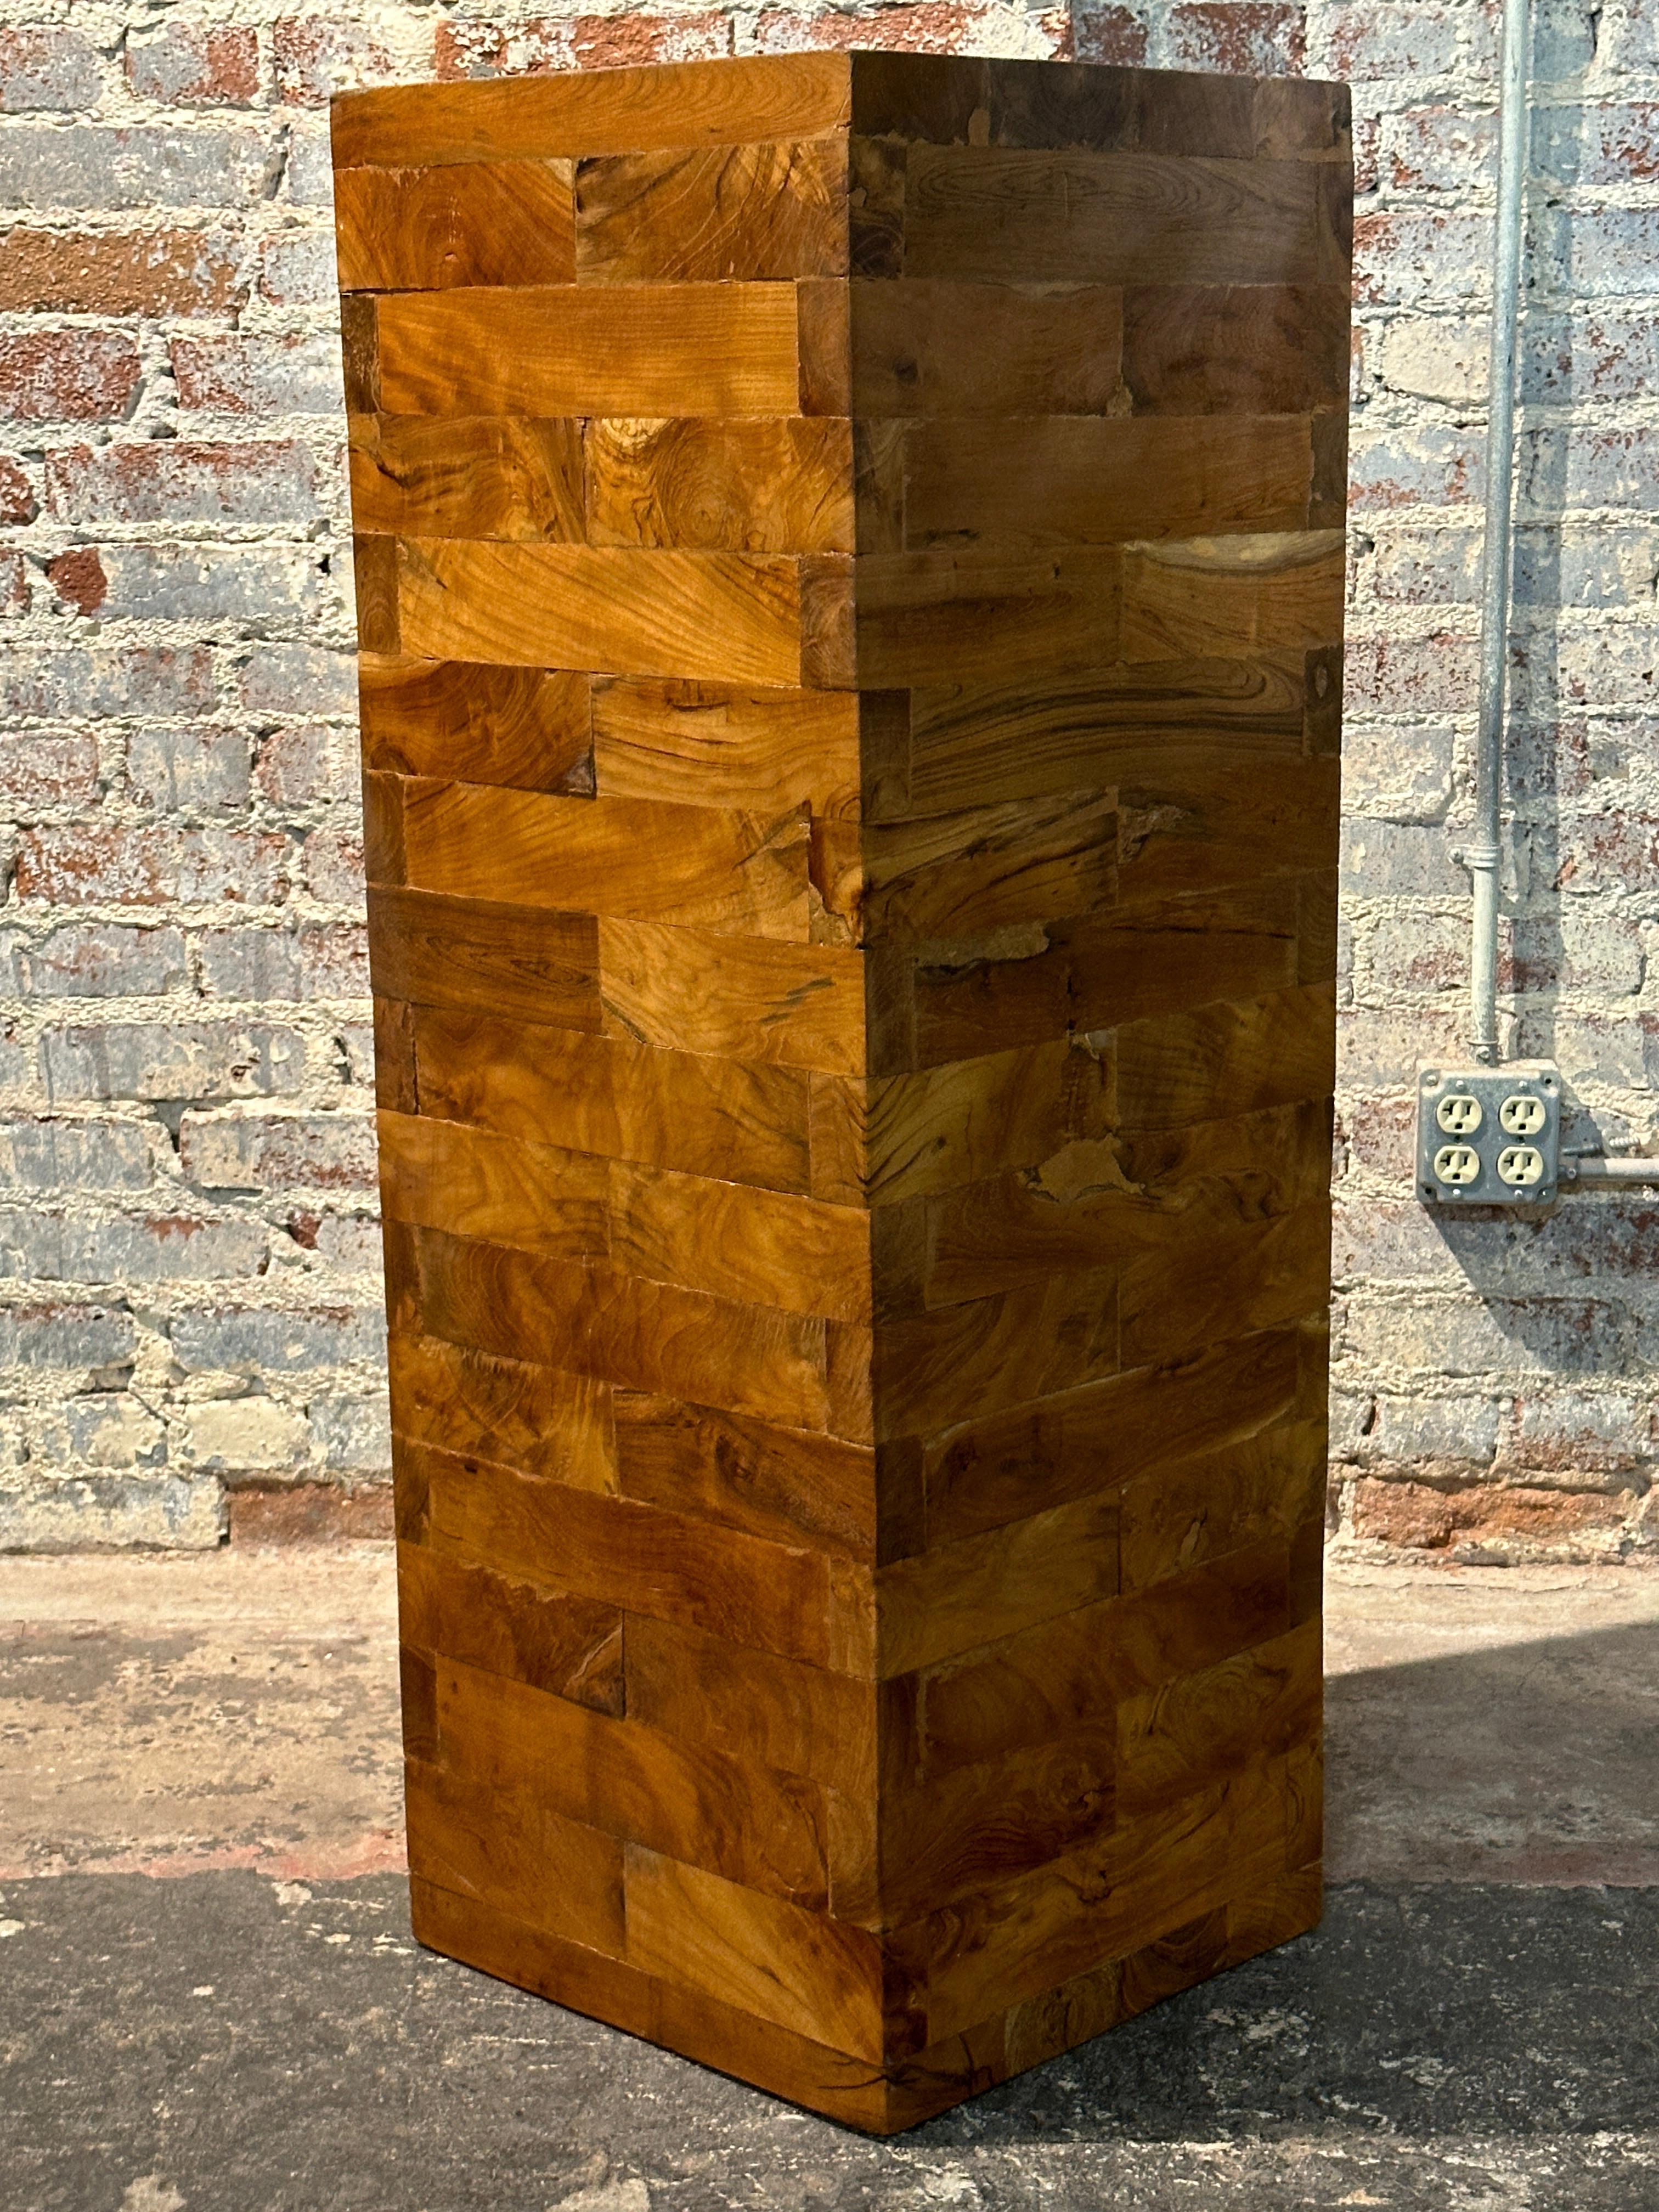 Dieses Paar brutalistischer Sockel/Bänke aus Nussbaumholz wurde vielleicht von Milo  Baughman  zeigen die zeitlose Schönheit natürlicher Holzarten. 

Die rechteckigen Massivholzblöcke werden sorgfältig zu einem Sockel zusammengesetzt. Dank des